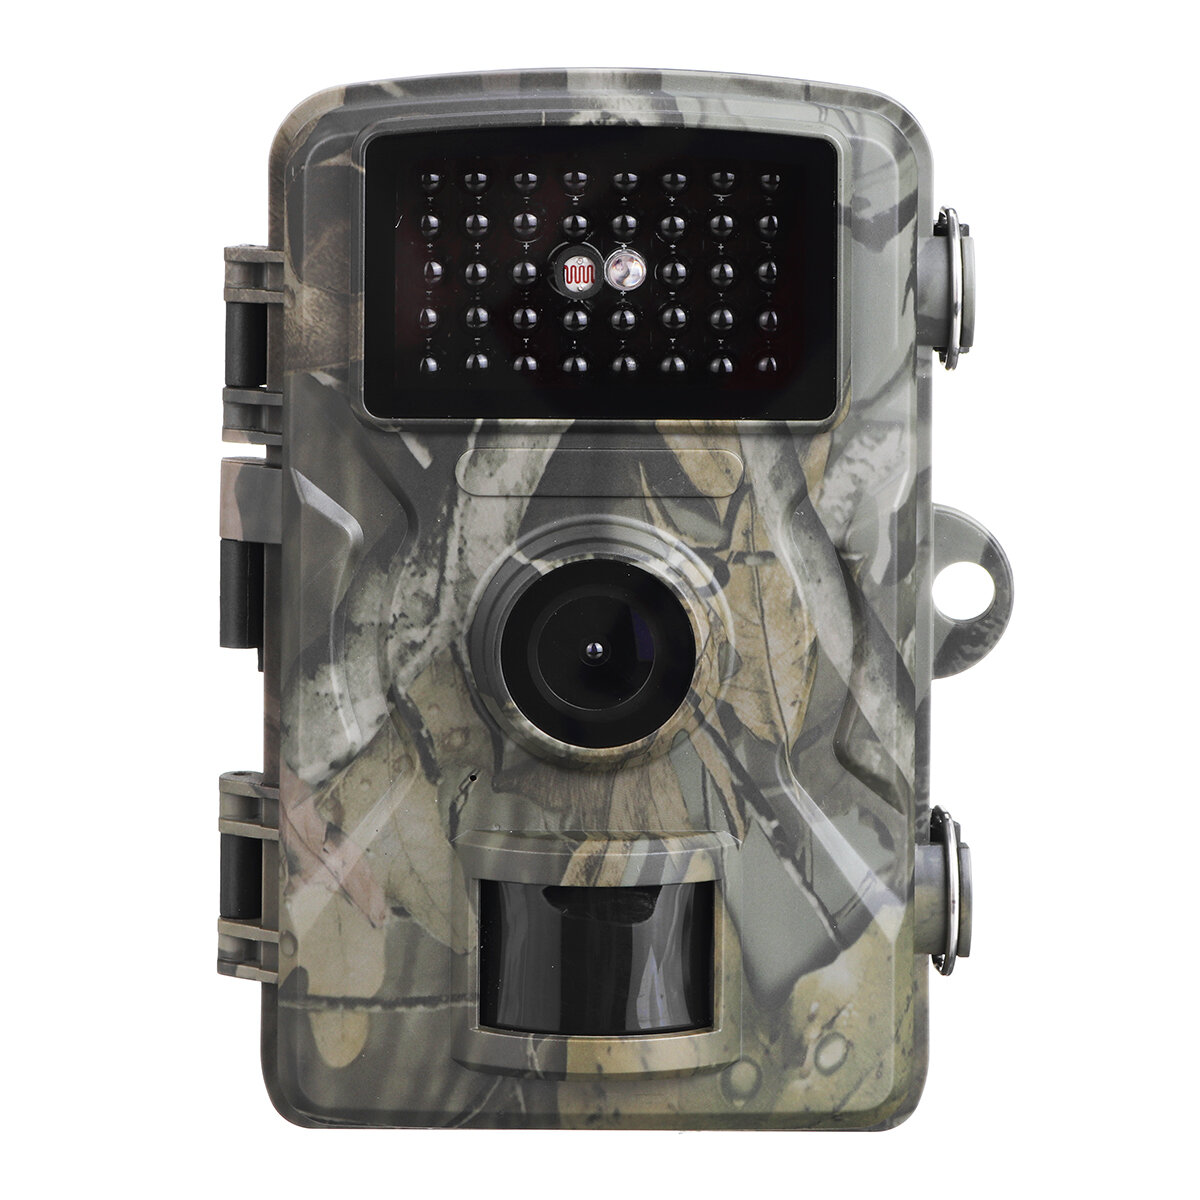 DOITOOL 26 LED 1080P HD Trail Kamera wasserdichte Staubdichte Scouting Nachtsichtkamera für Die Überwachung Der Jagd auf Wild Lebende Tiere 